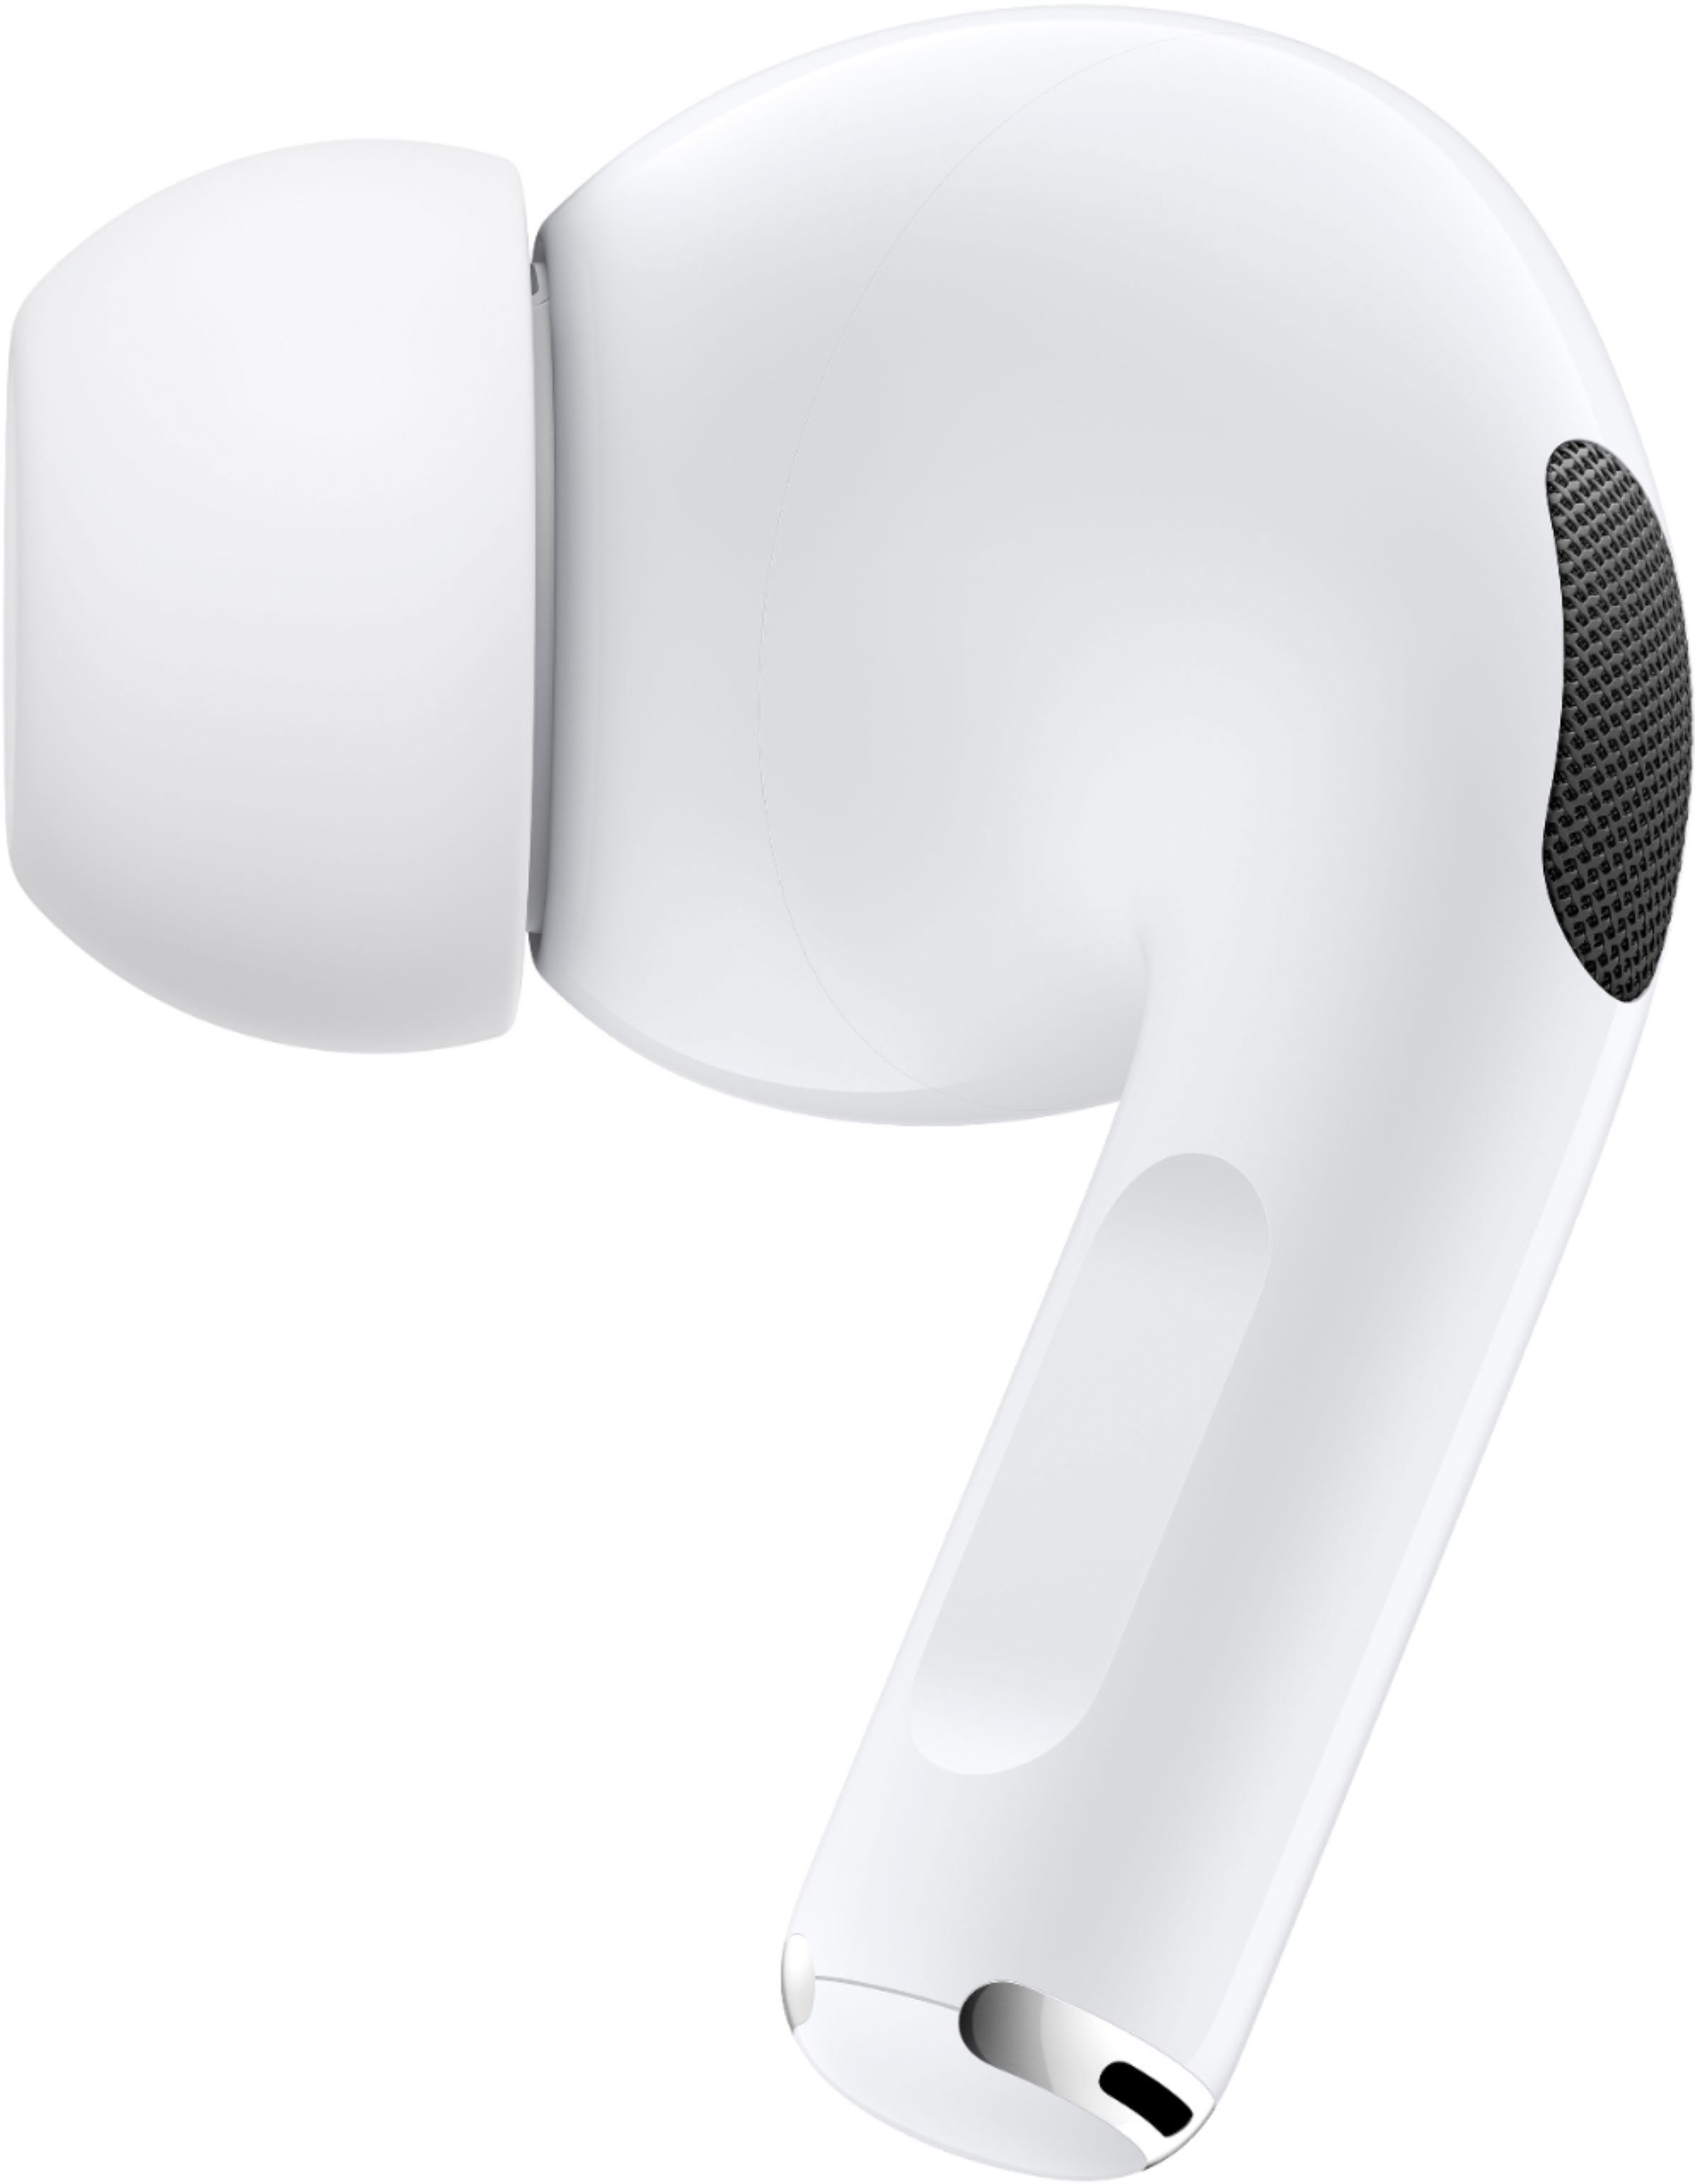 スマートフォン/携帯電話 バッテリー/充電器 Best Buy: Apple AirPods Pro White MWP22AM/A